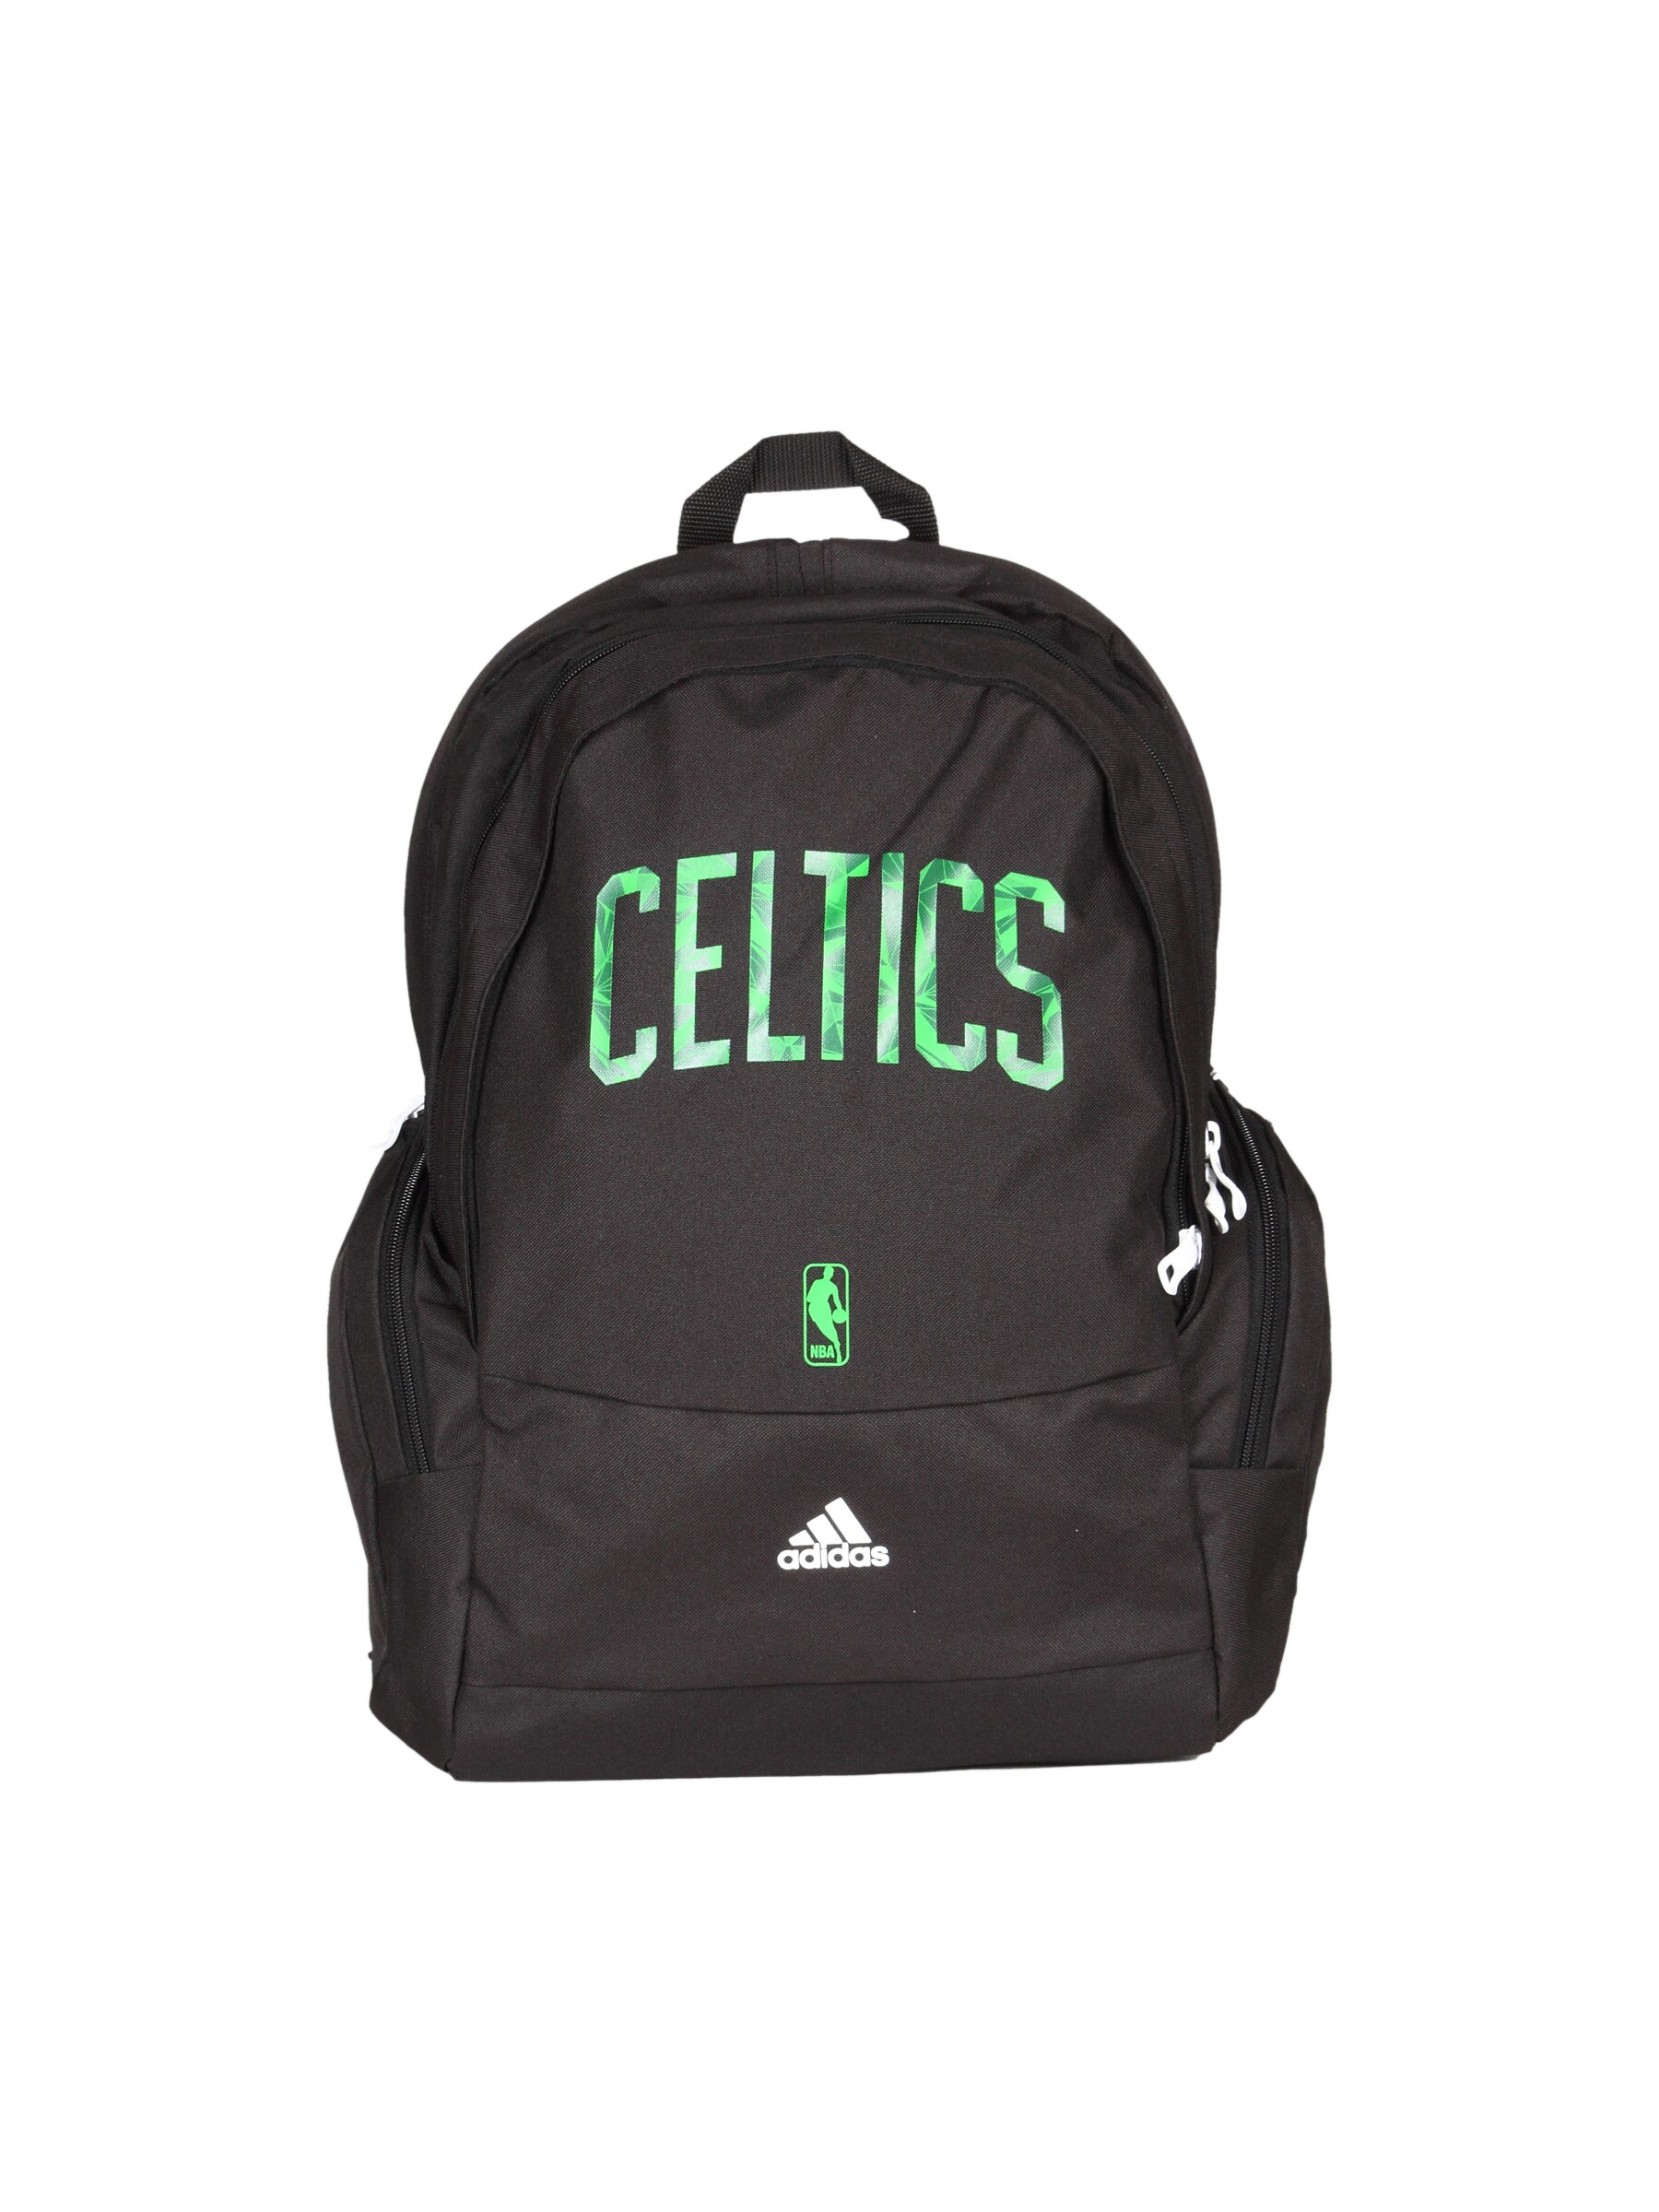 ADIDAS Celtics Black Unisex Backpack